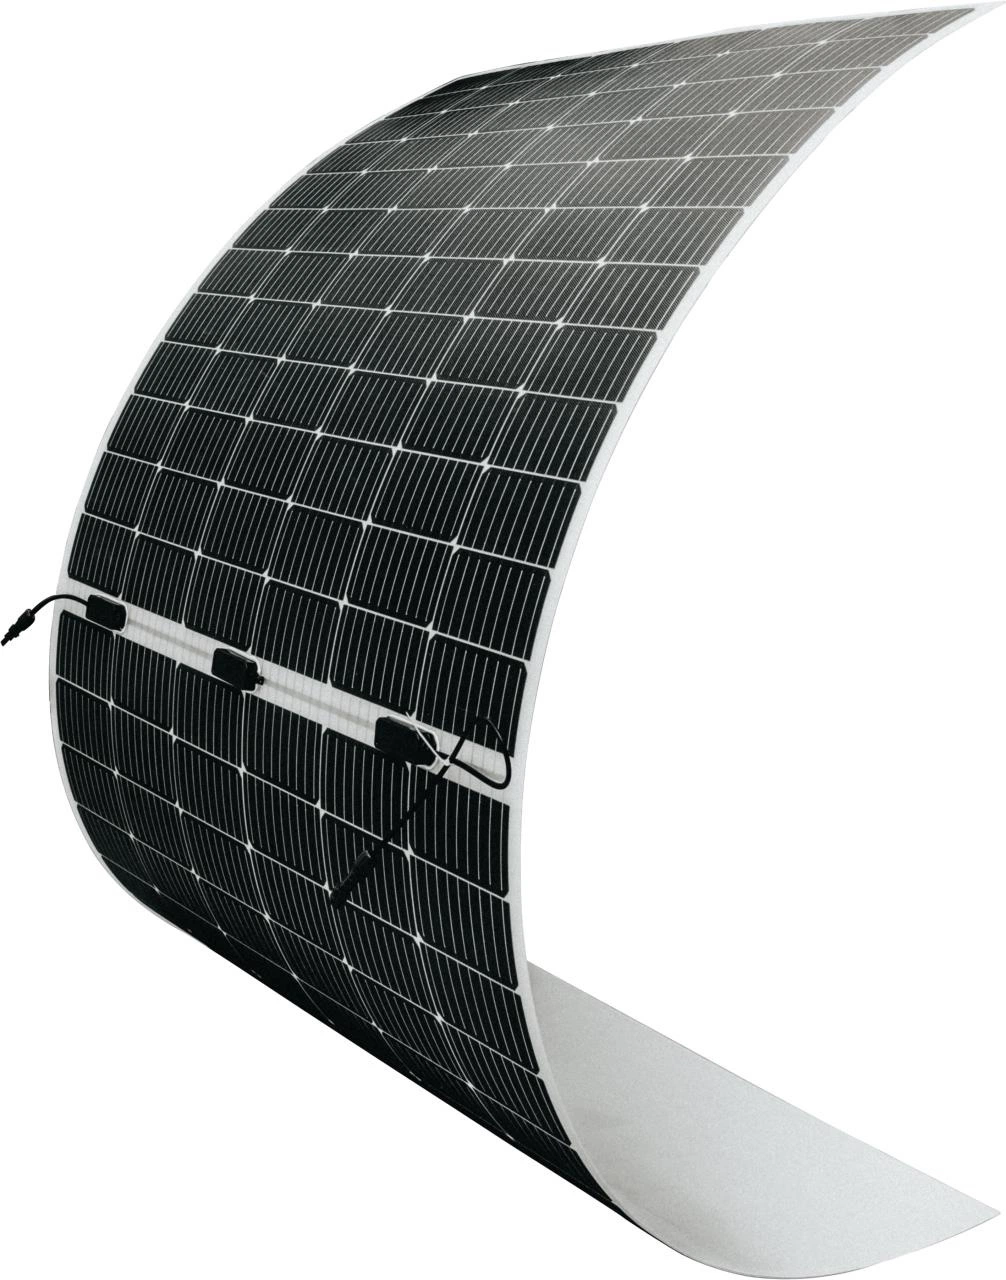 520 Вт 430 Вт 375 Вт 175 Вт 100 Вт 90 Вт гибкая панель солнечных батарей Солнечная панель изогнутая панель солнечных батарей складной панели солнечных батарей переносные солнечные батареи Панель для крыши в исходном качестве RV